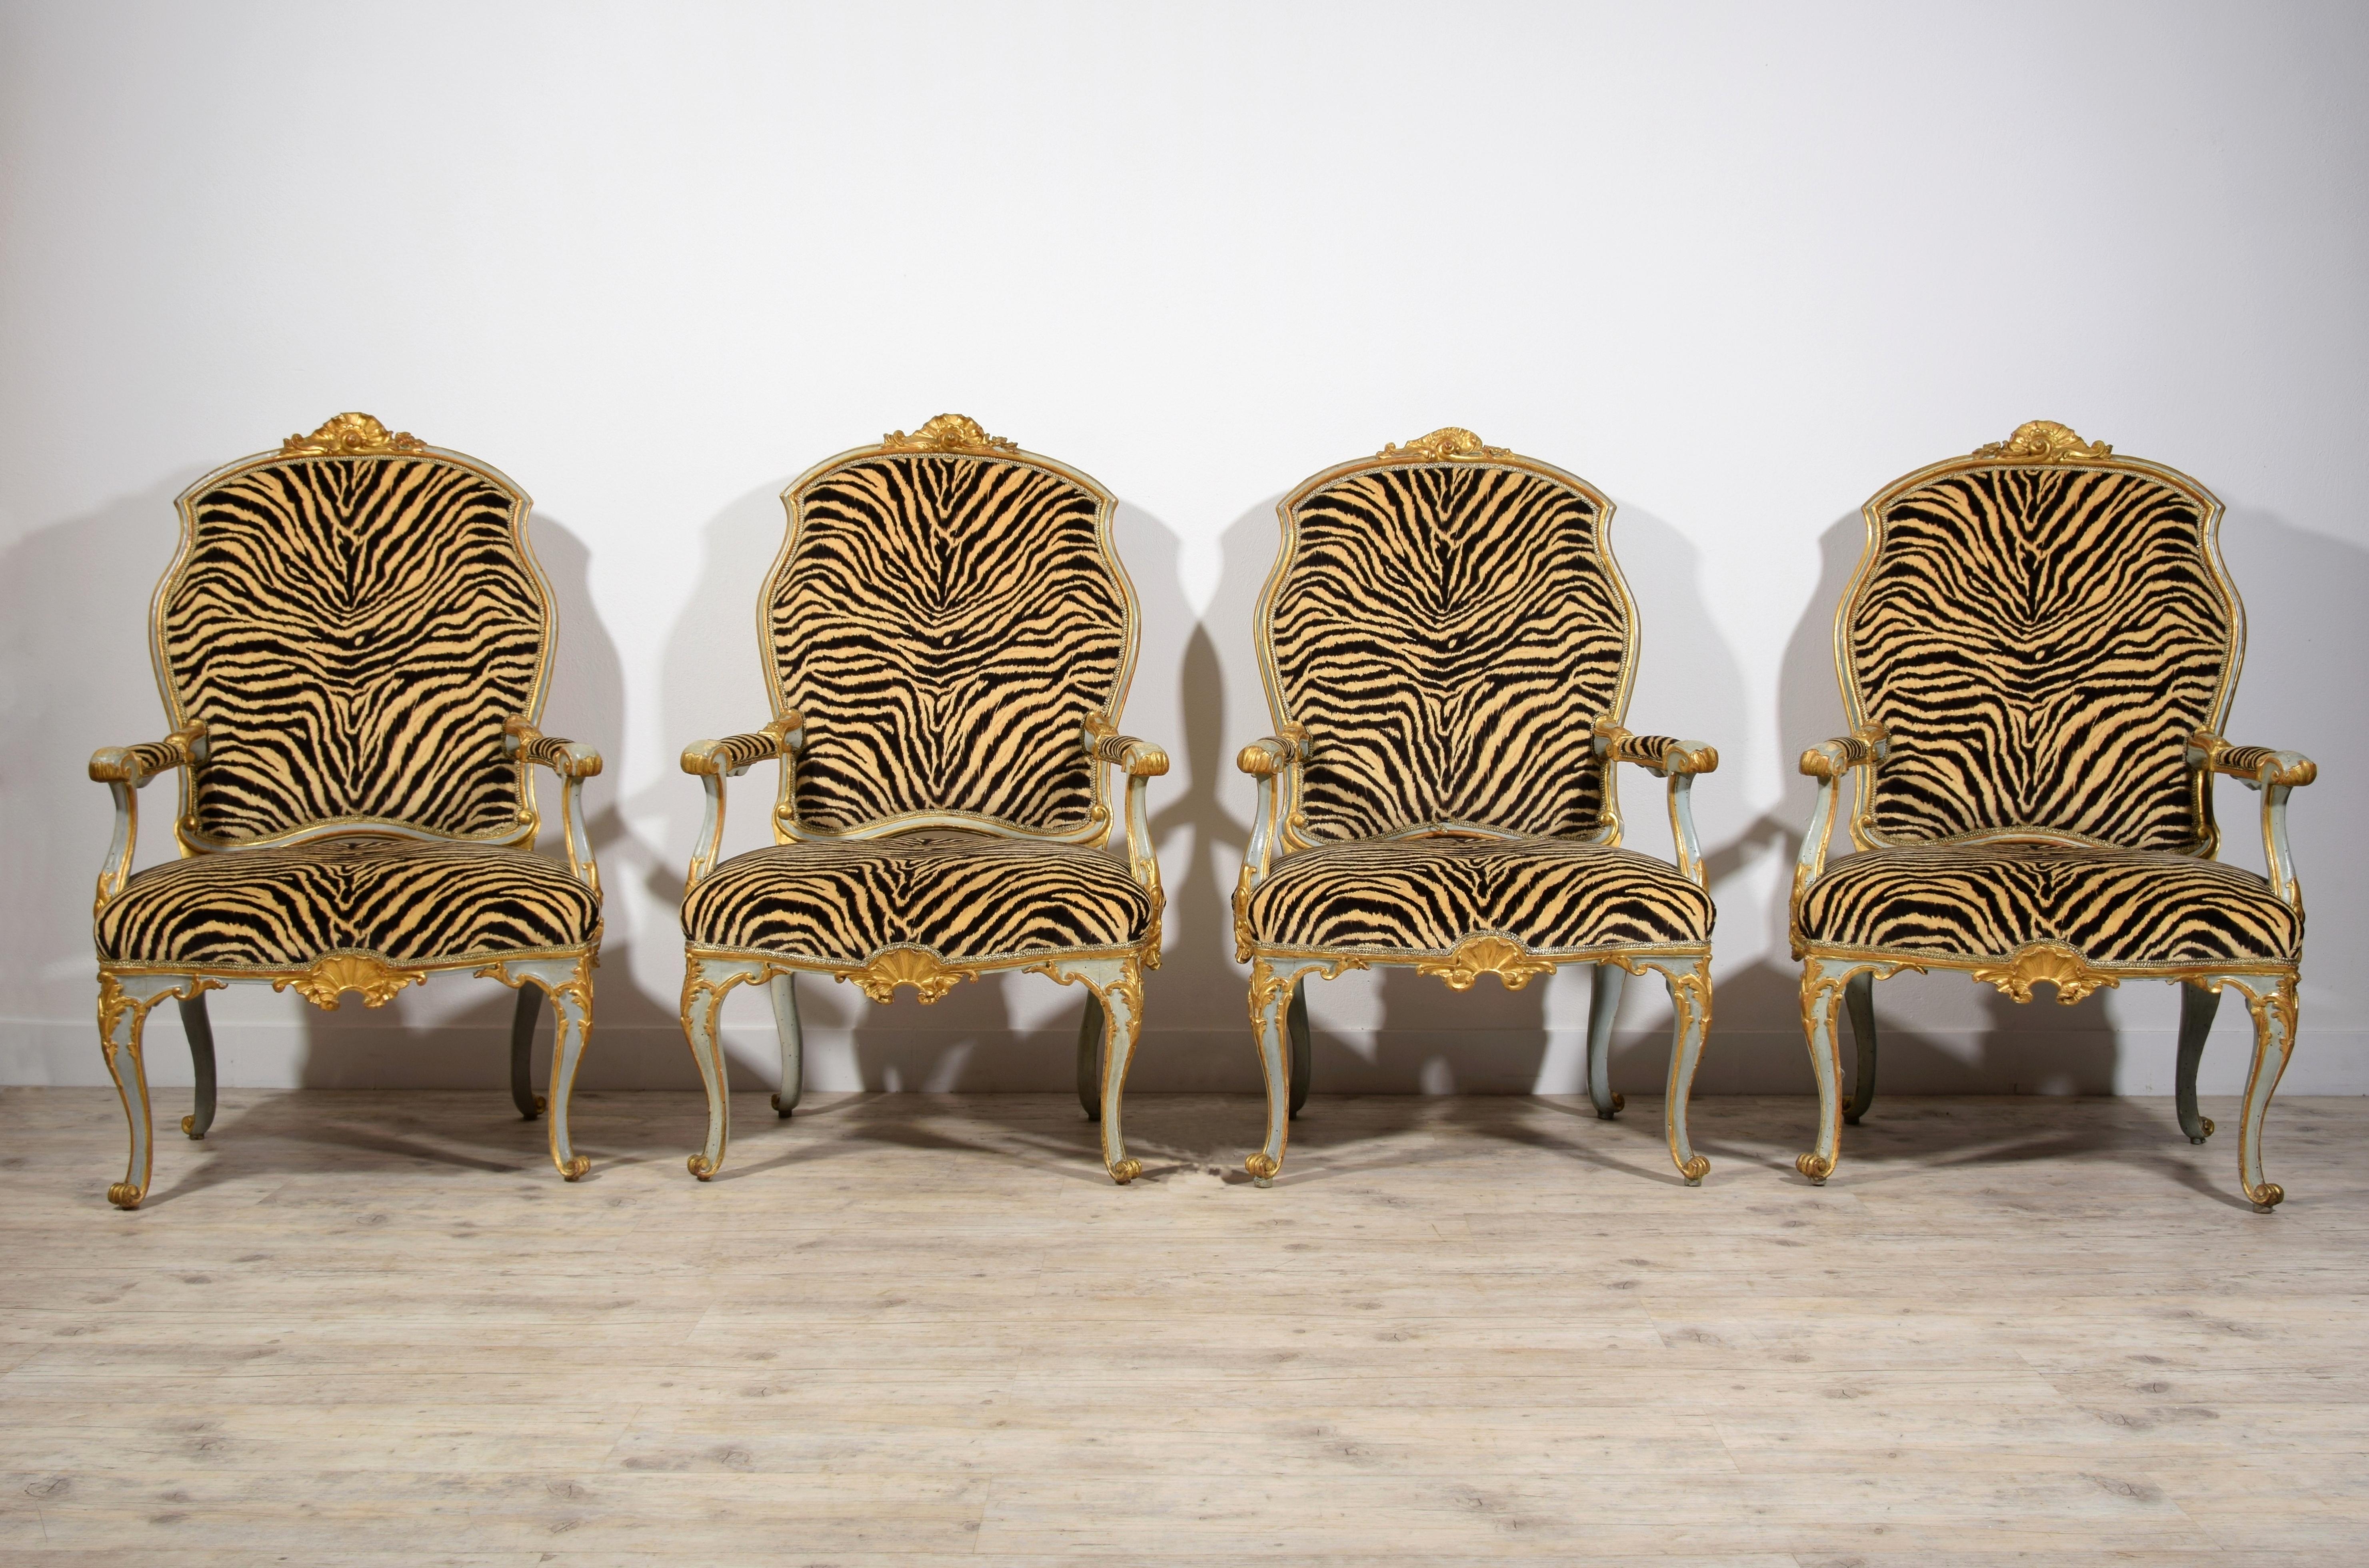 xVIIIe siècle, quatre grands fauteuils italiens en bois laqué et doré
Ces quatre fauteuils raffinés ont été fabriqués dans la première moitié du XVIIIe siècle en Italie centrale. La structure, avec un siège très large, est en bois doré et laqué